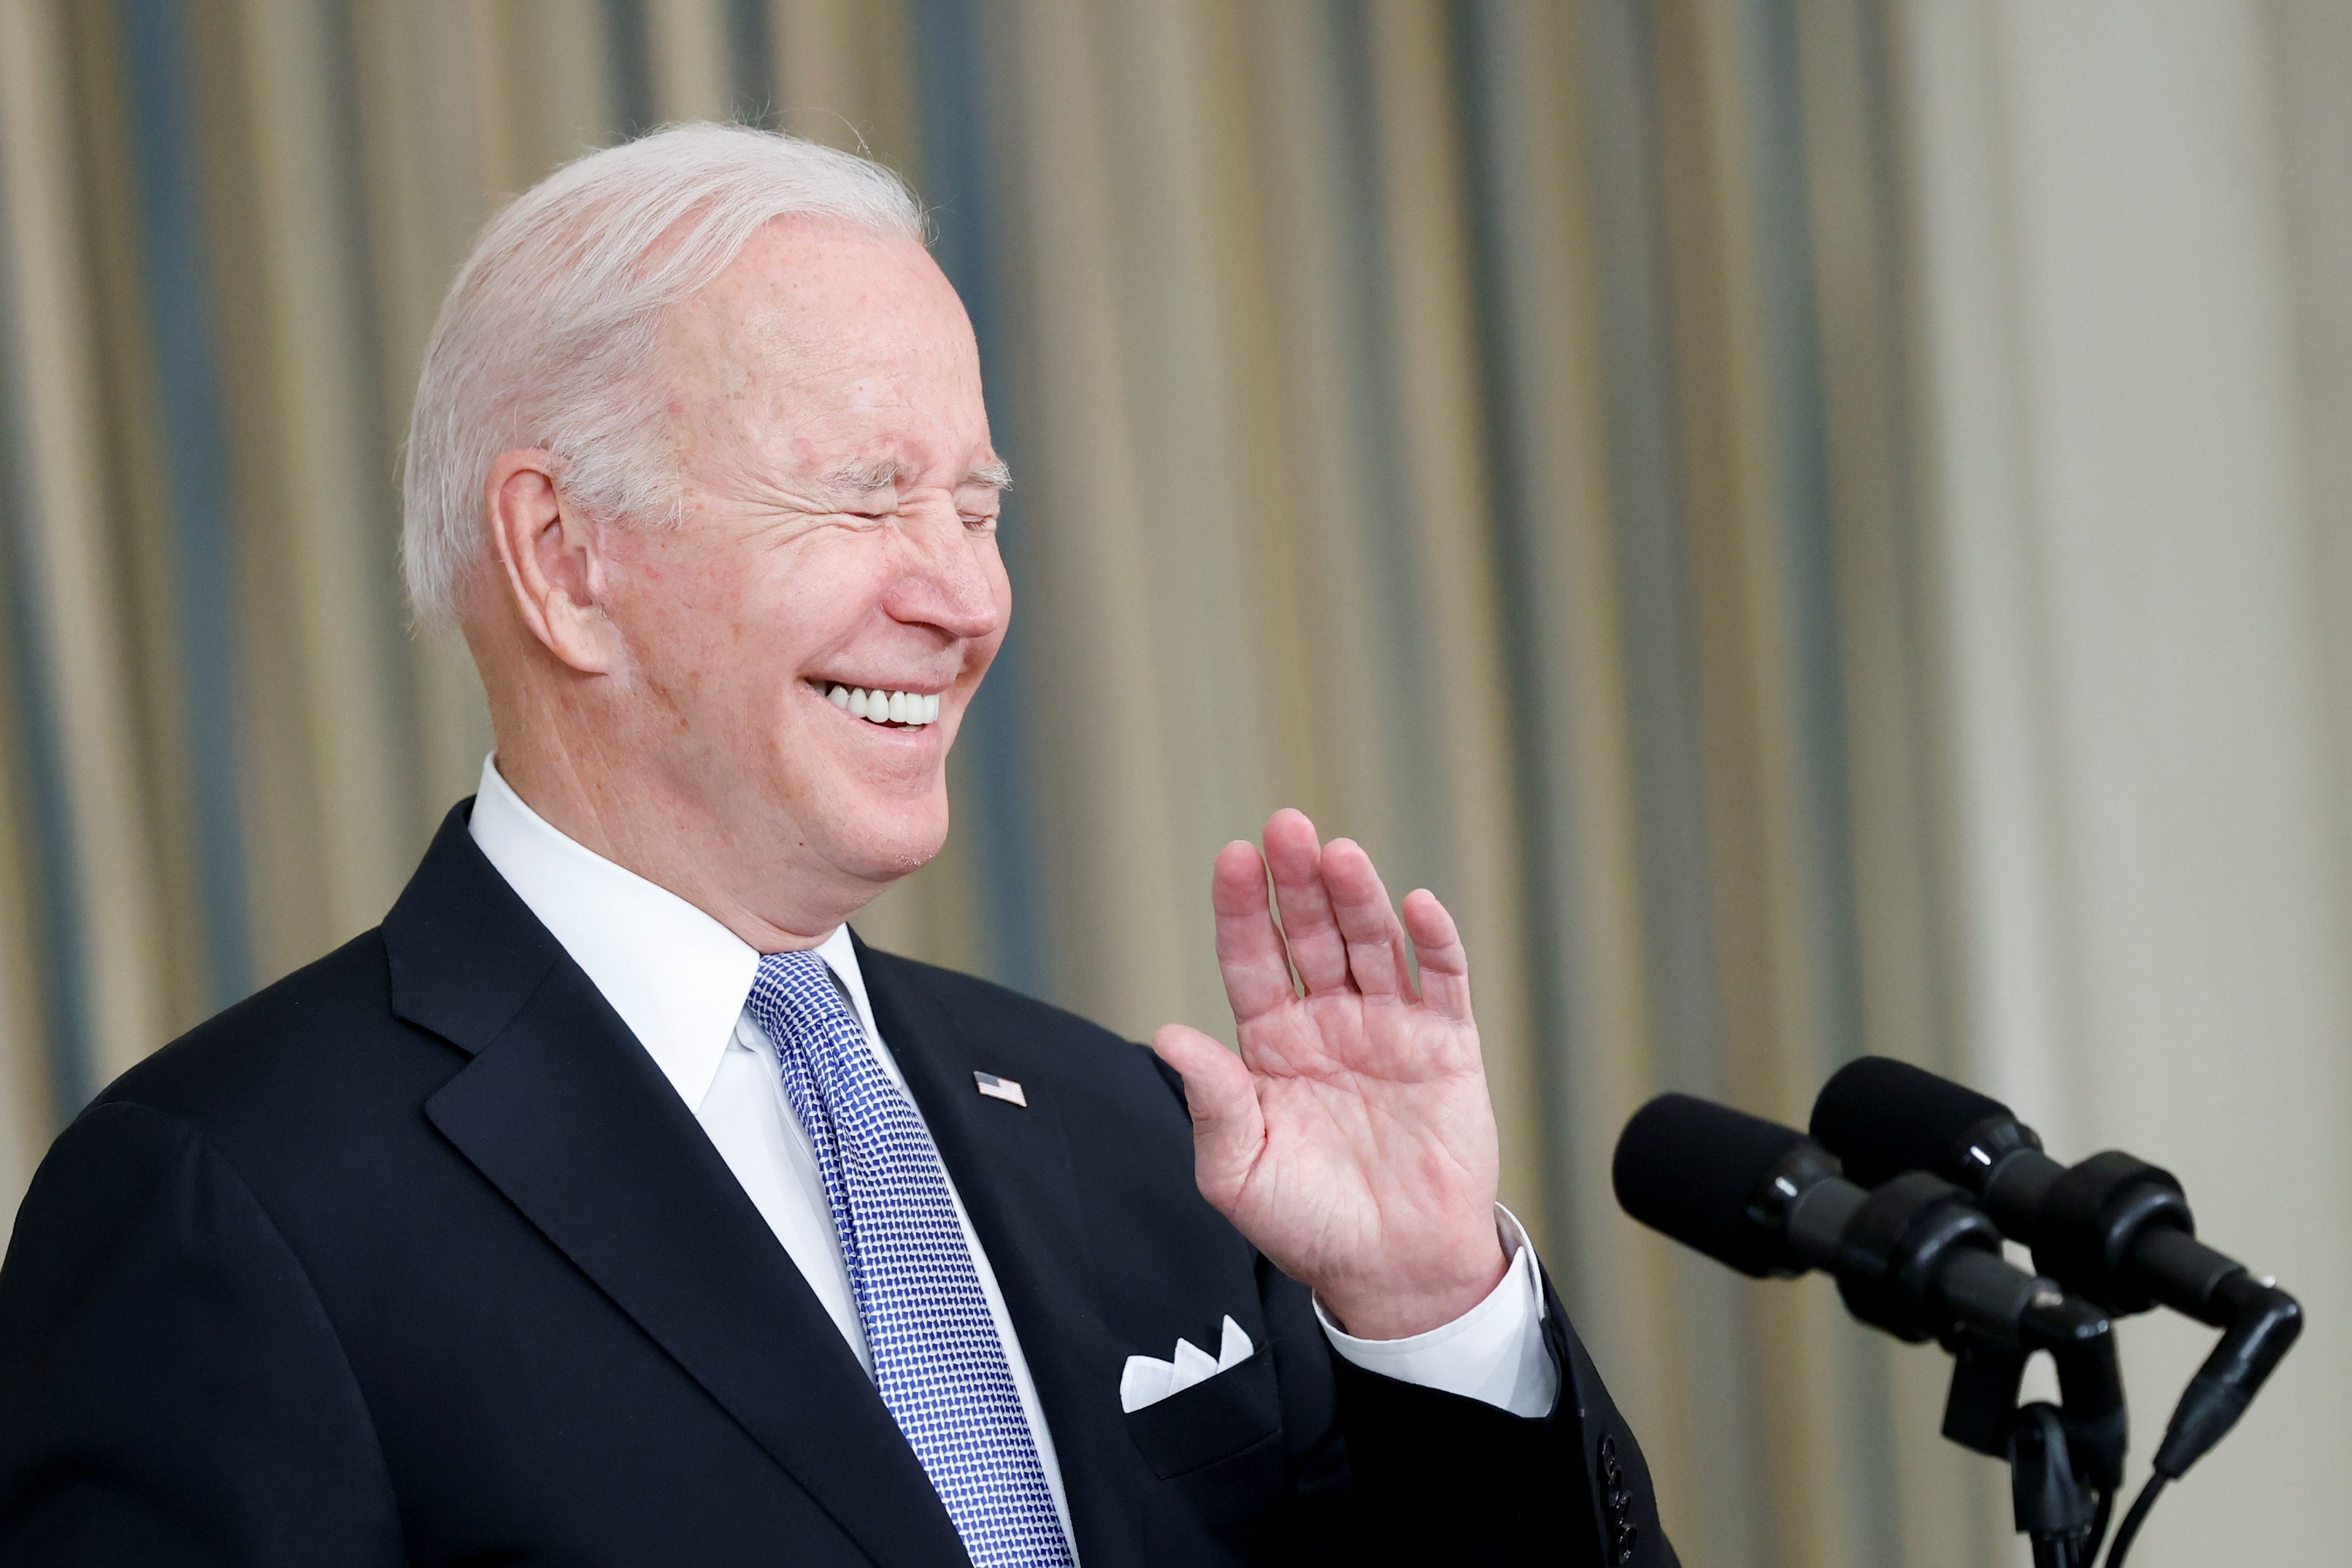 ‘Finally, infrastructure week!’ Biden says, cheering $1 trillion bill